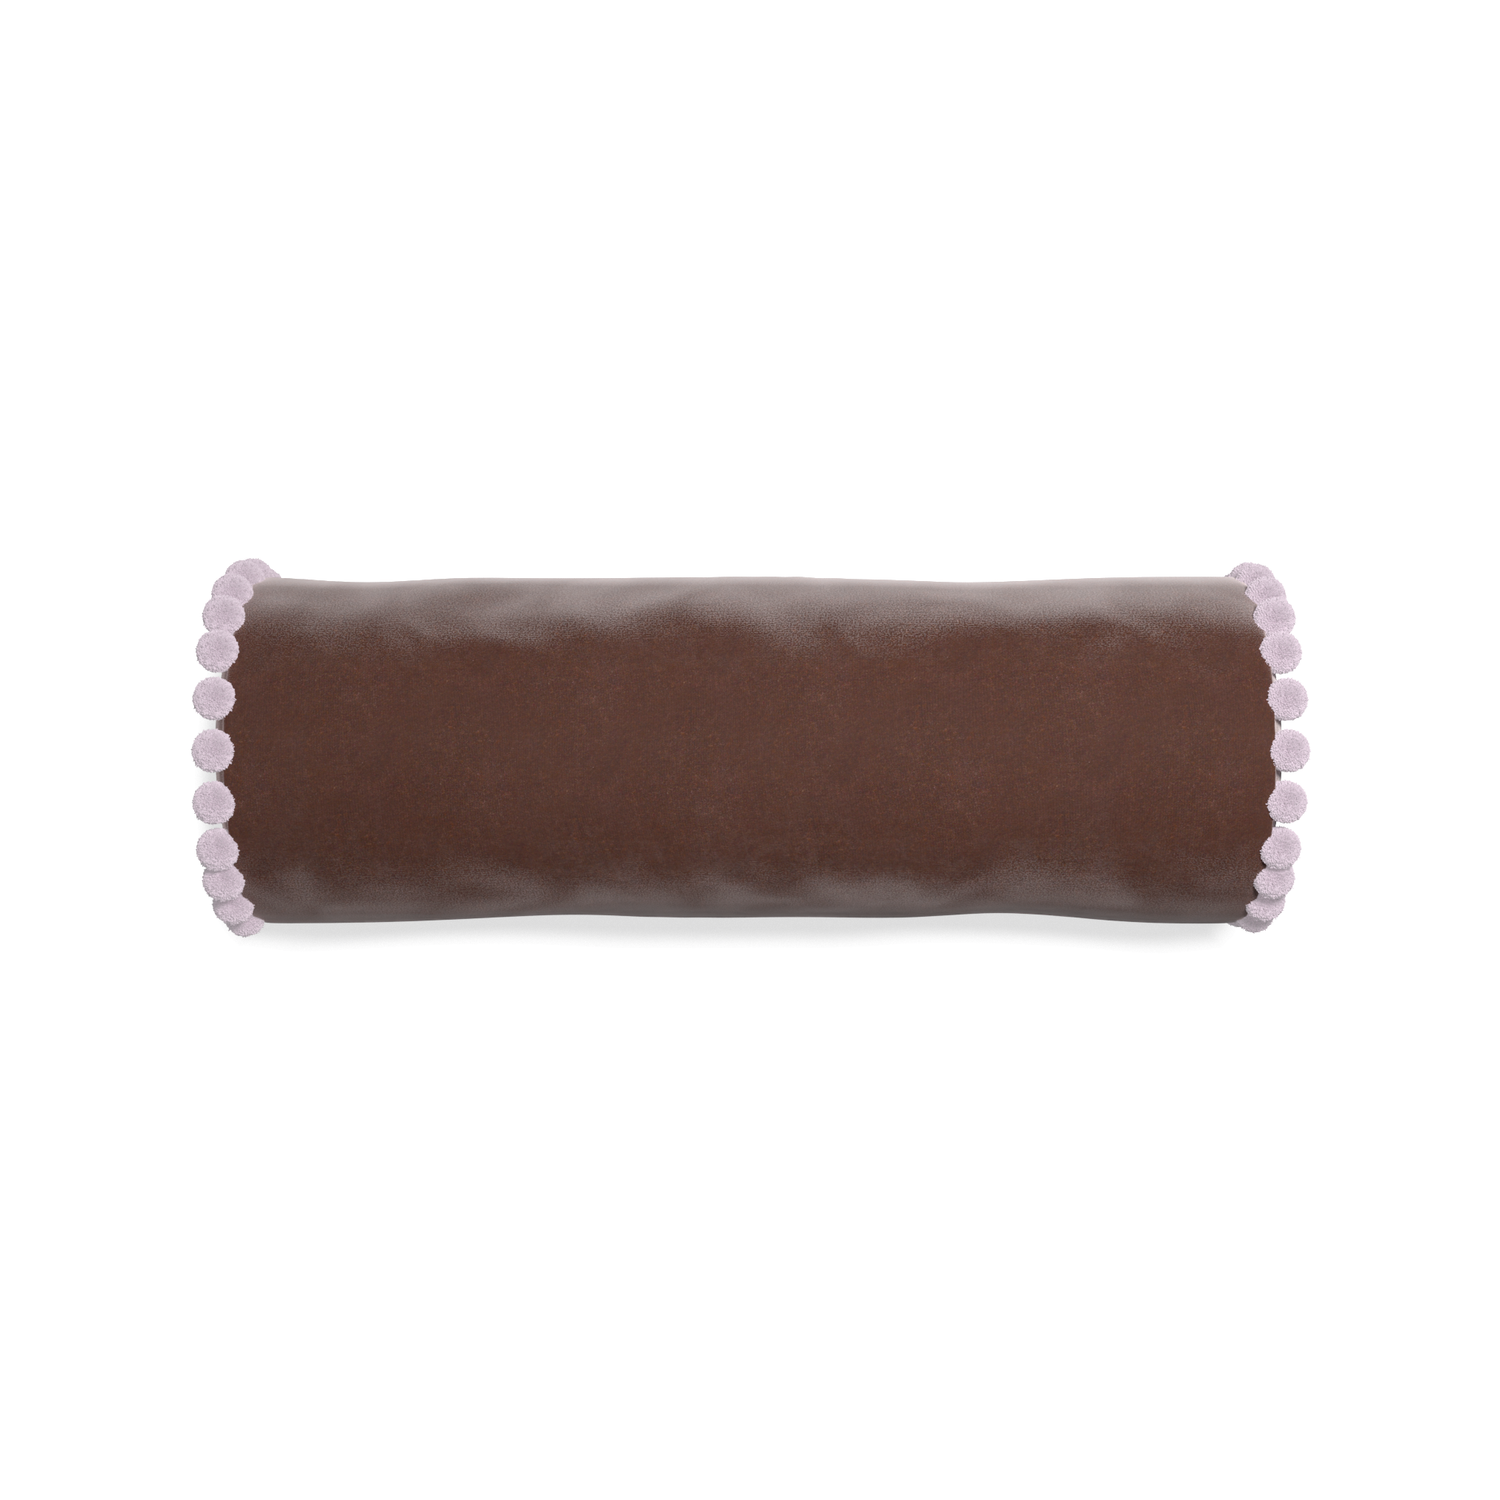 bolster brown velvet pillow with lilac pom poms